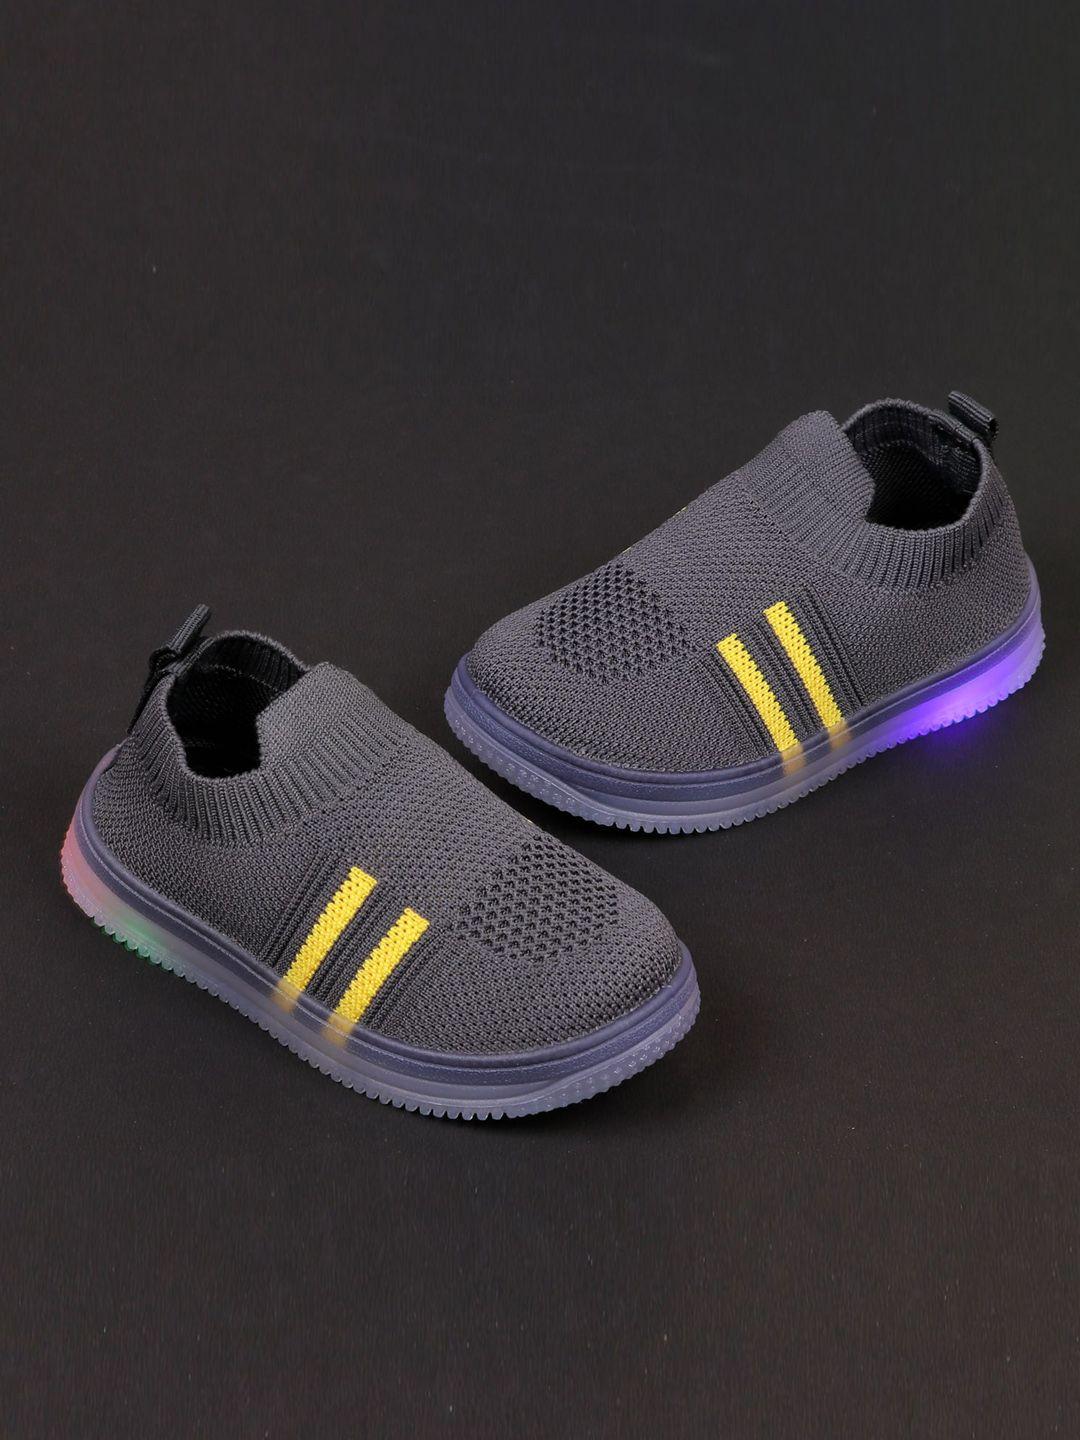 baesd unisex kids grey sneakers